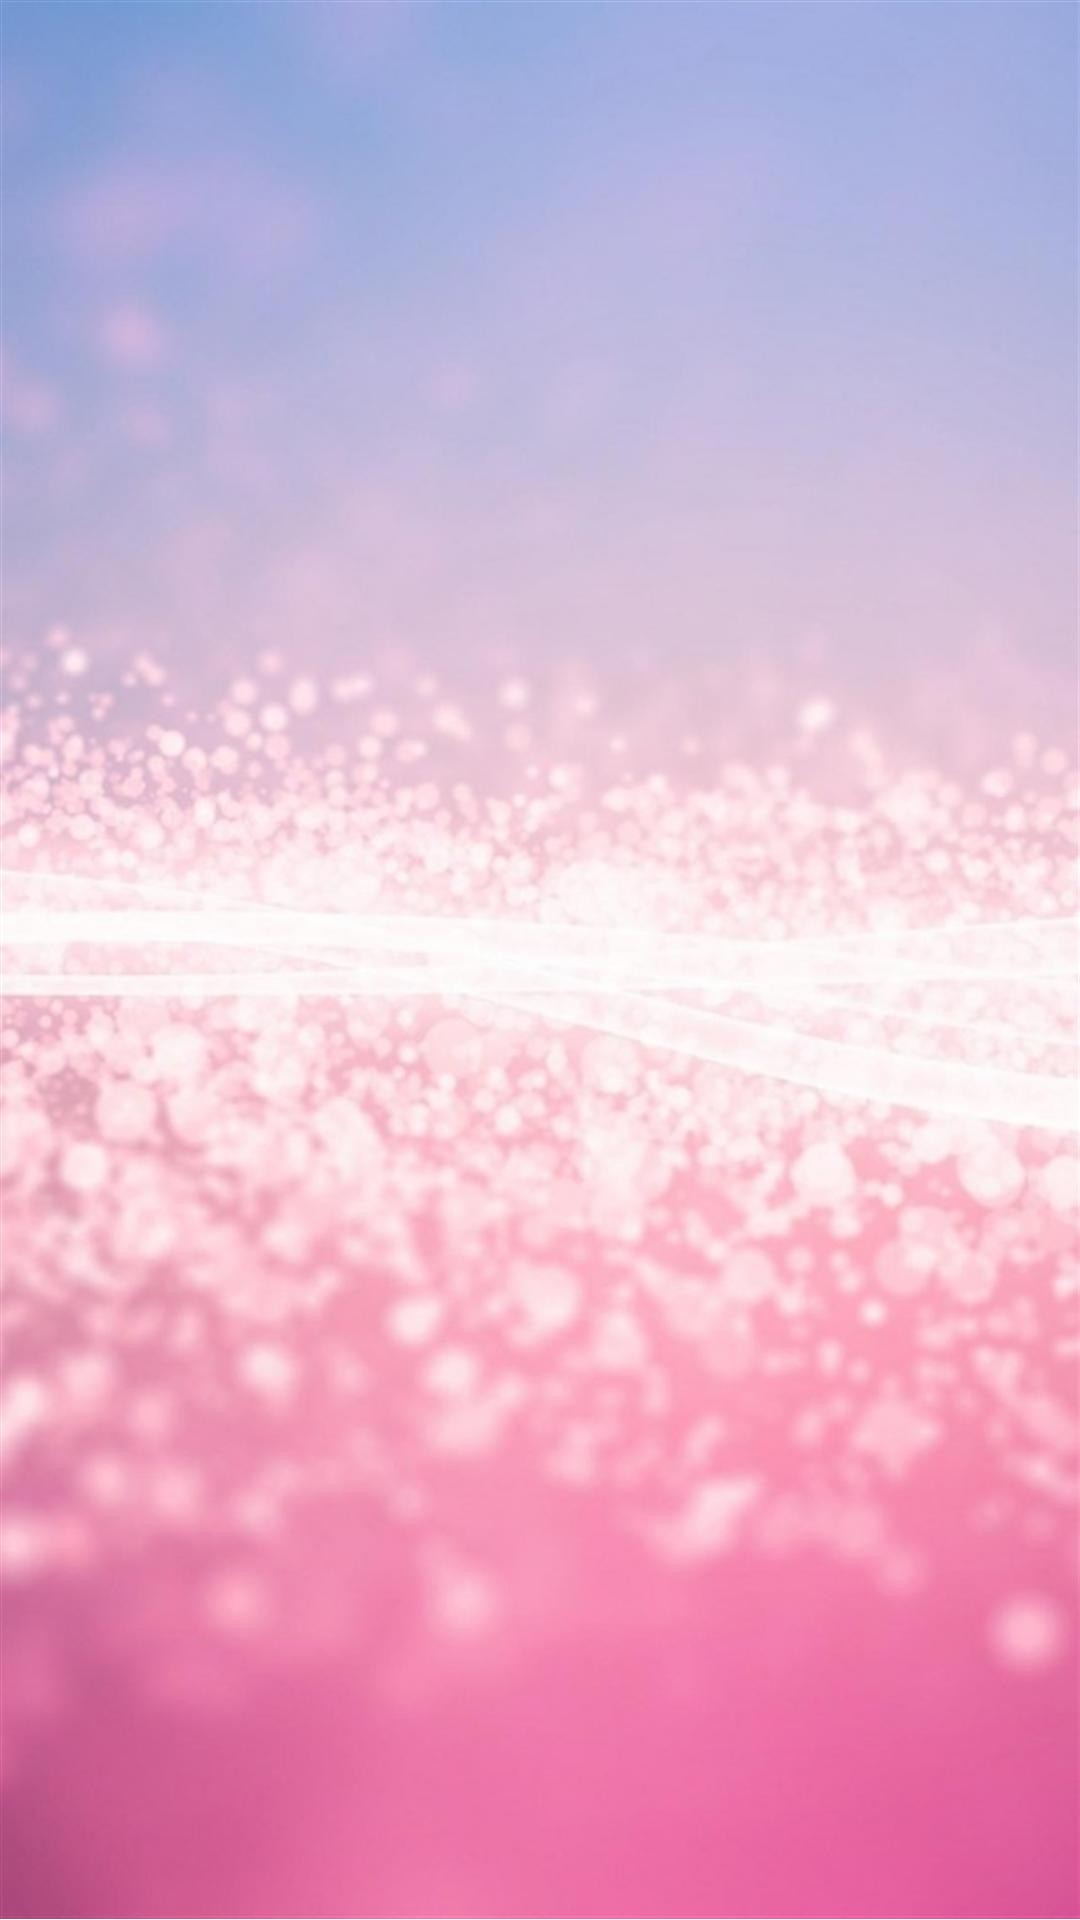 Pink Glitter Stardust Smartphone Wallpaper HD GetPhotos 1080x1920